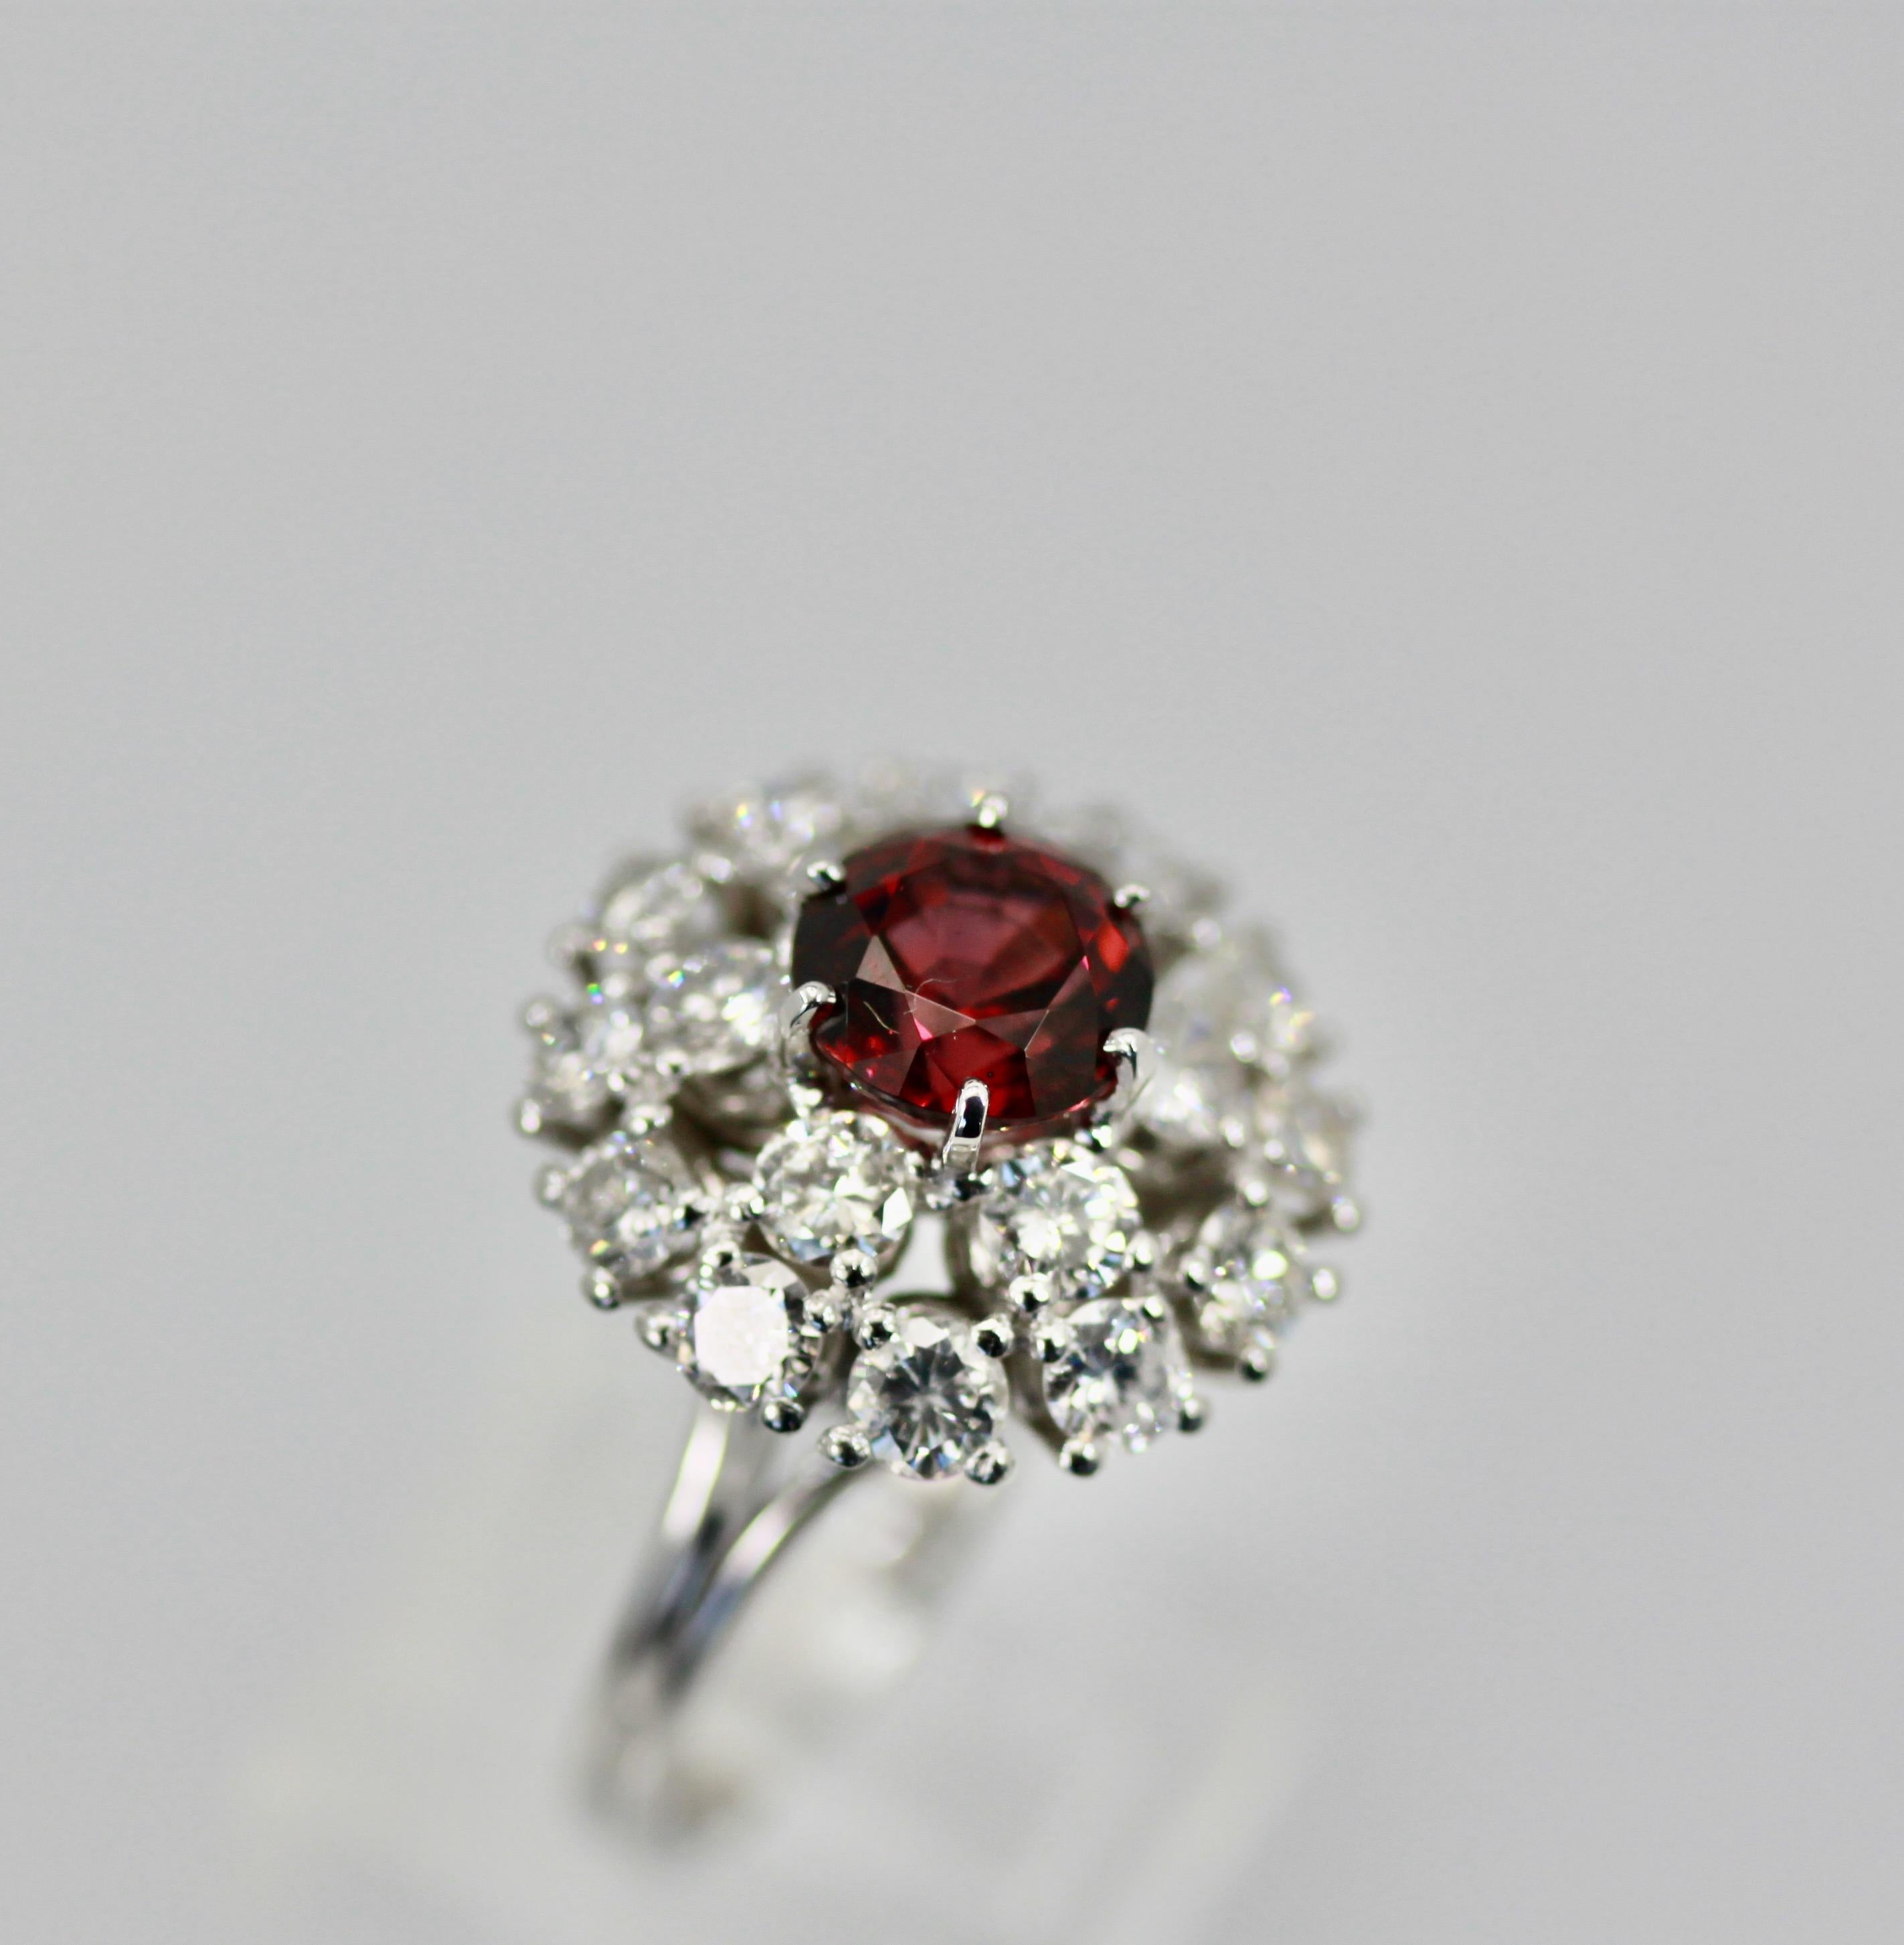 Dieser natürliche Granat-Rhodolit-Diamant-Cocktailring hat ein Gewicht von 3,66 Karat und wurde in keiner Weise behandelt.  Die Diamanten, die diesen Ring umgeben, sind über 3,00 Karat in einem Ziel / Ballerina-Stil Ring.  Die Diamanten sind G-H